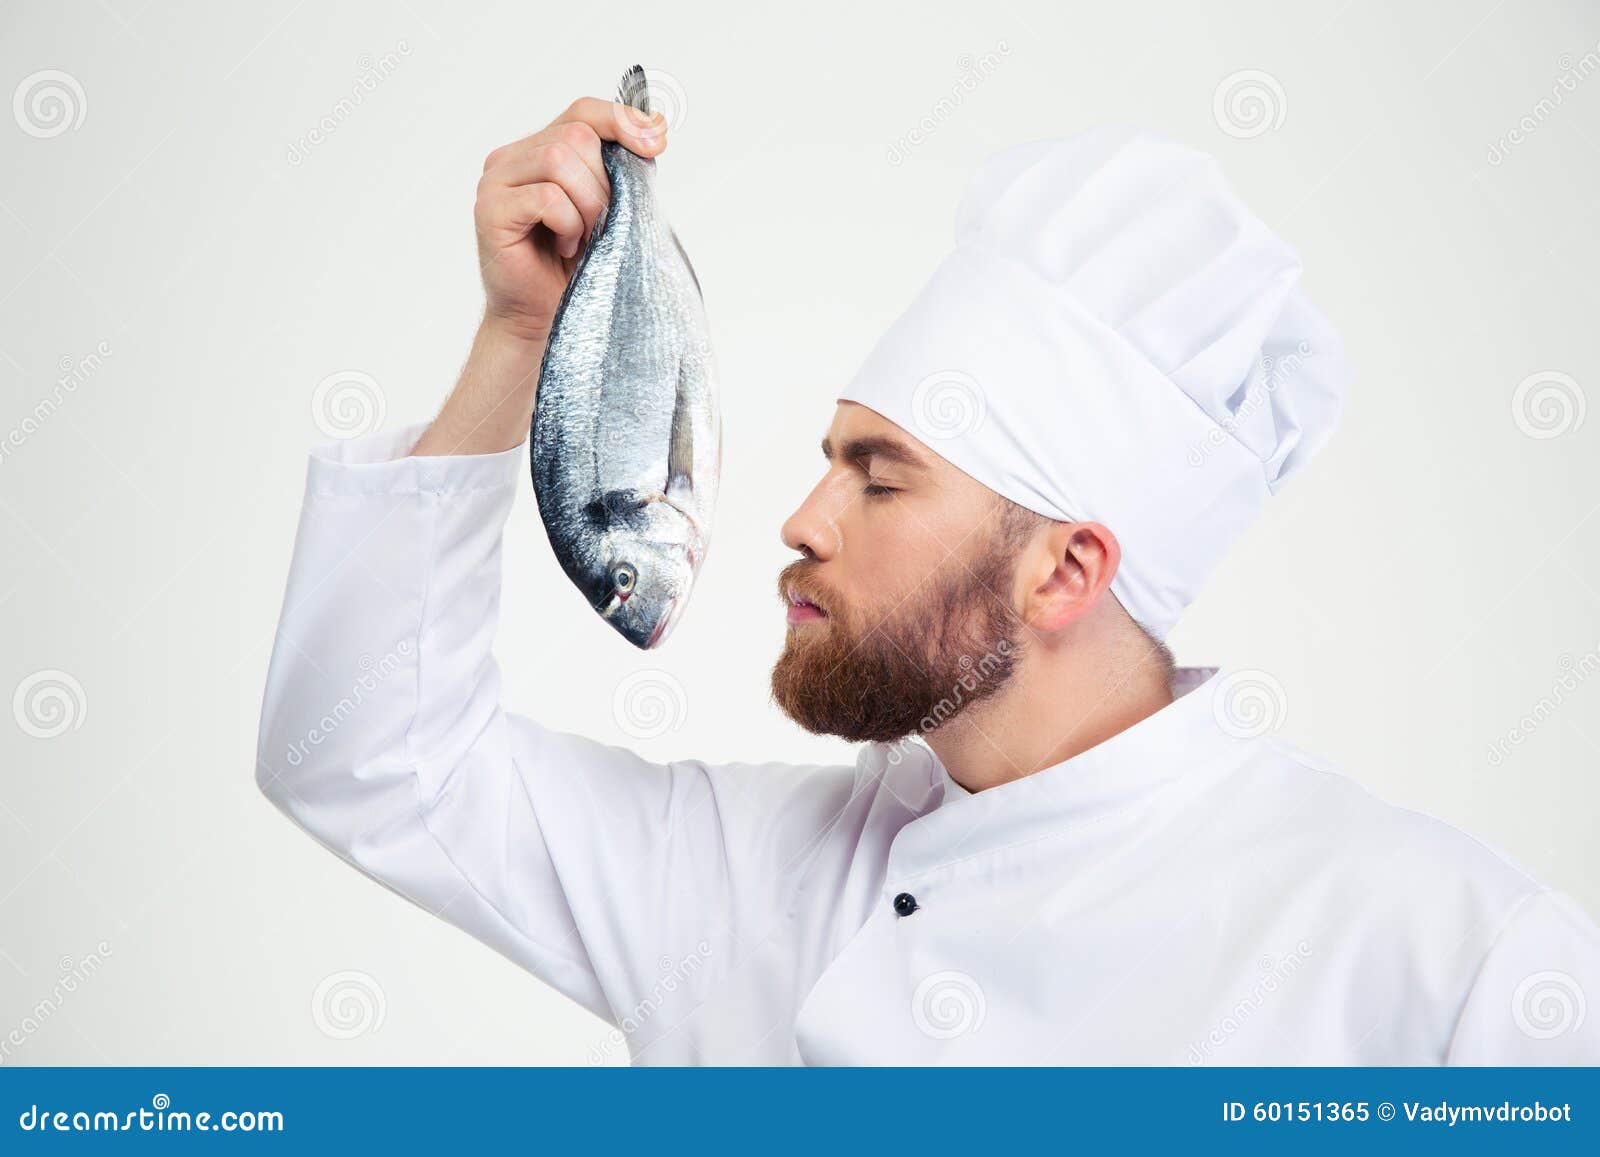 Вкус и запах рыбы. Рыбный повар. Повар с рыбой. Шеф повар рыба. Рыбка повар.